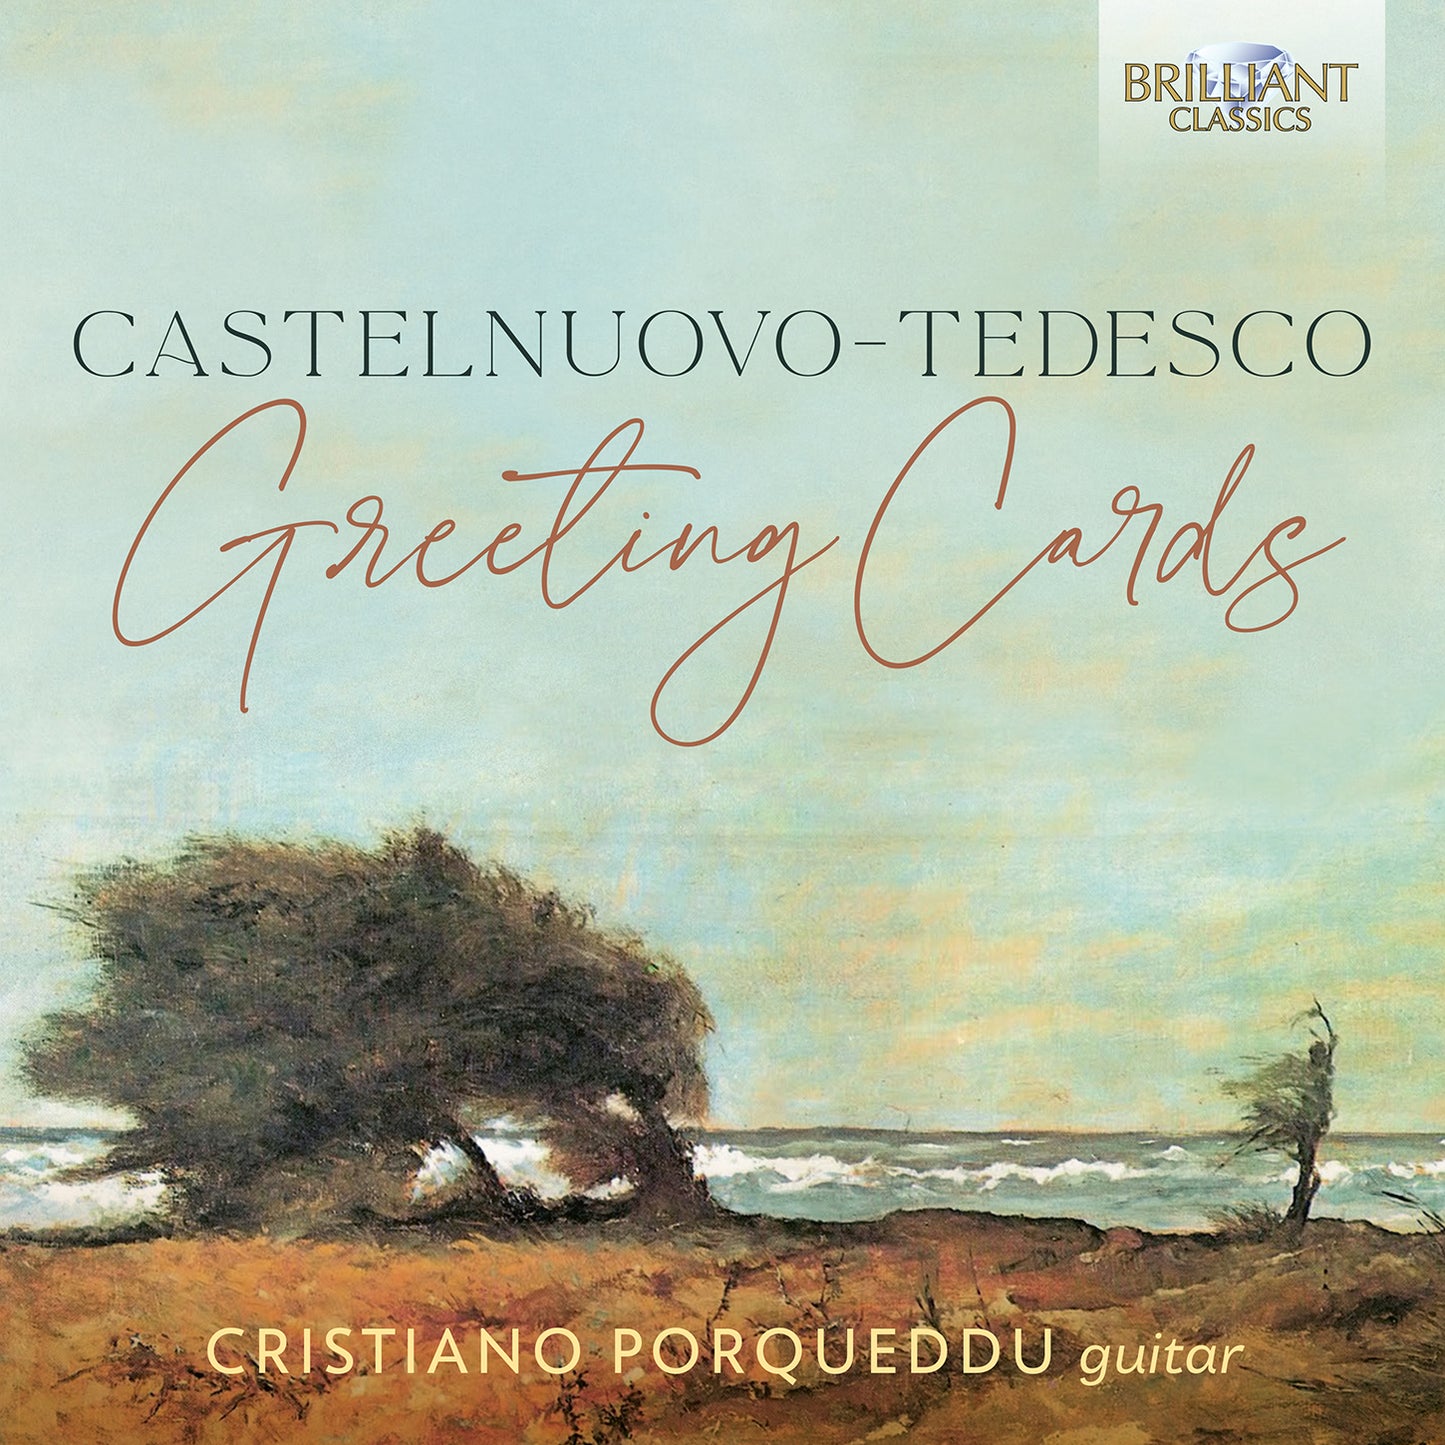 Castelnuovo-Tedesco: Greeting Cards  Cristiano Porqueddu